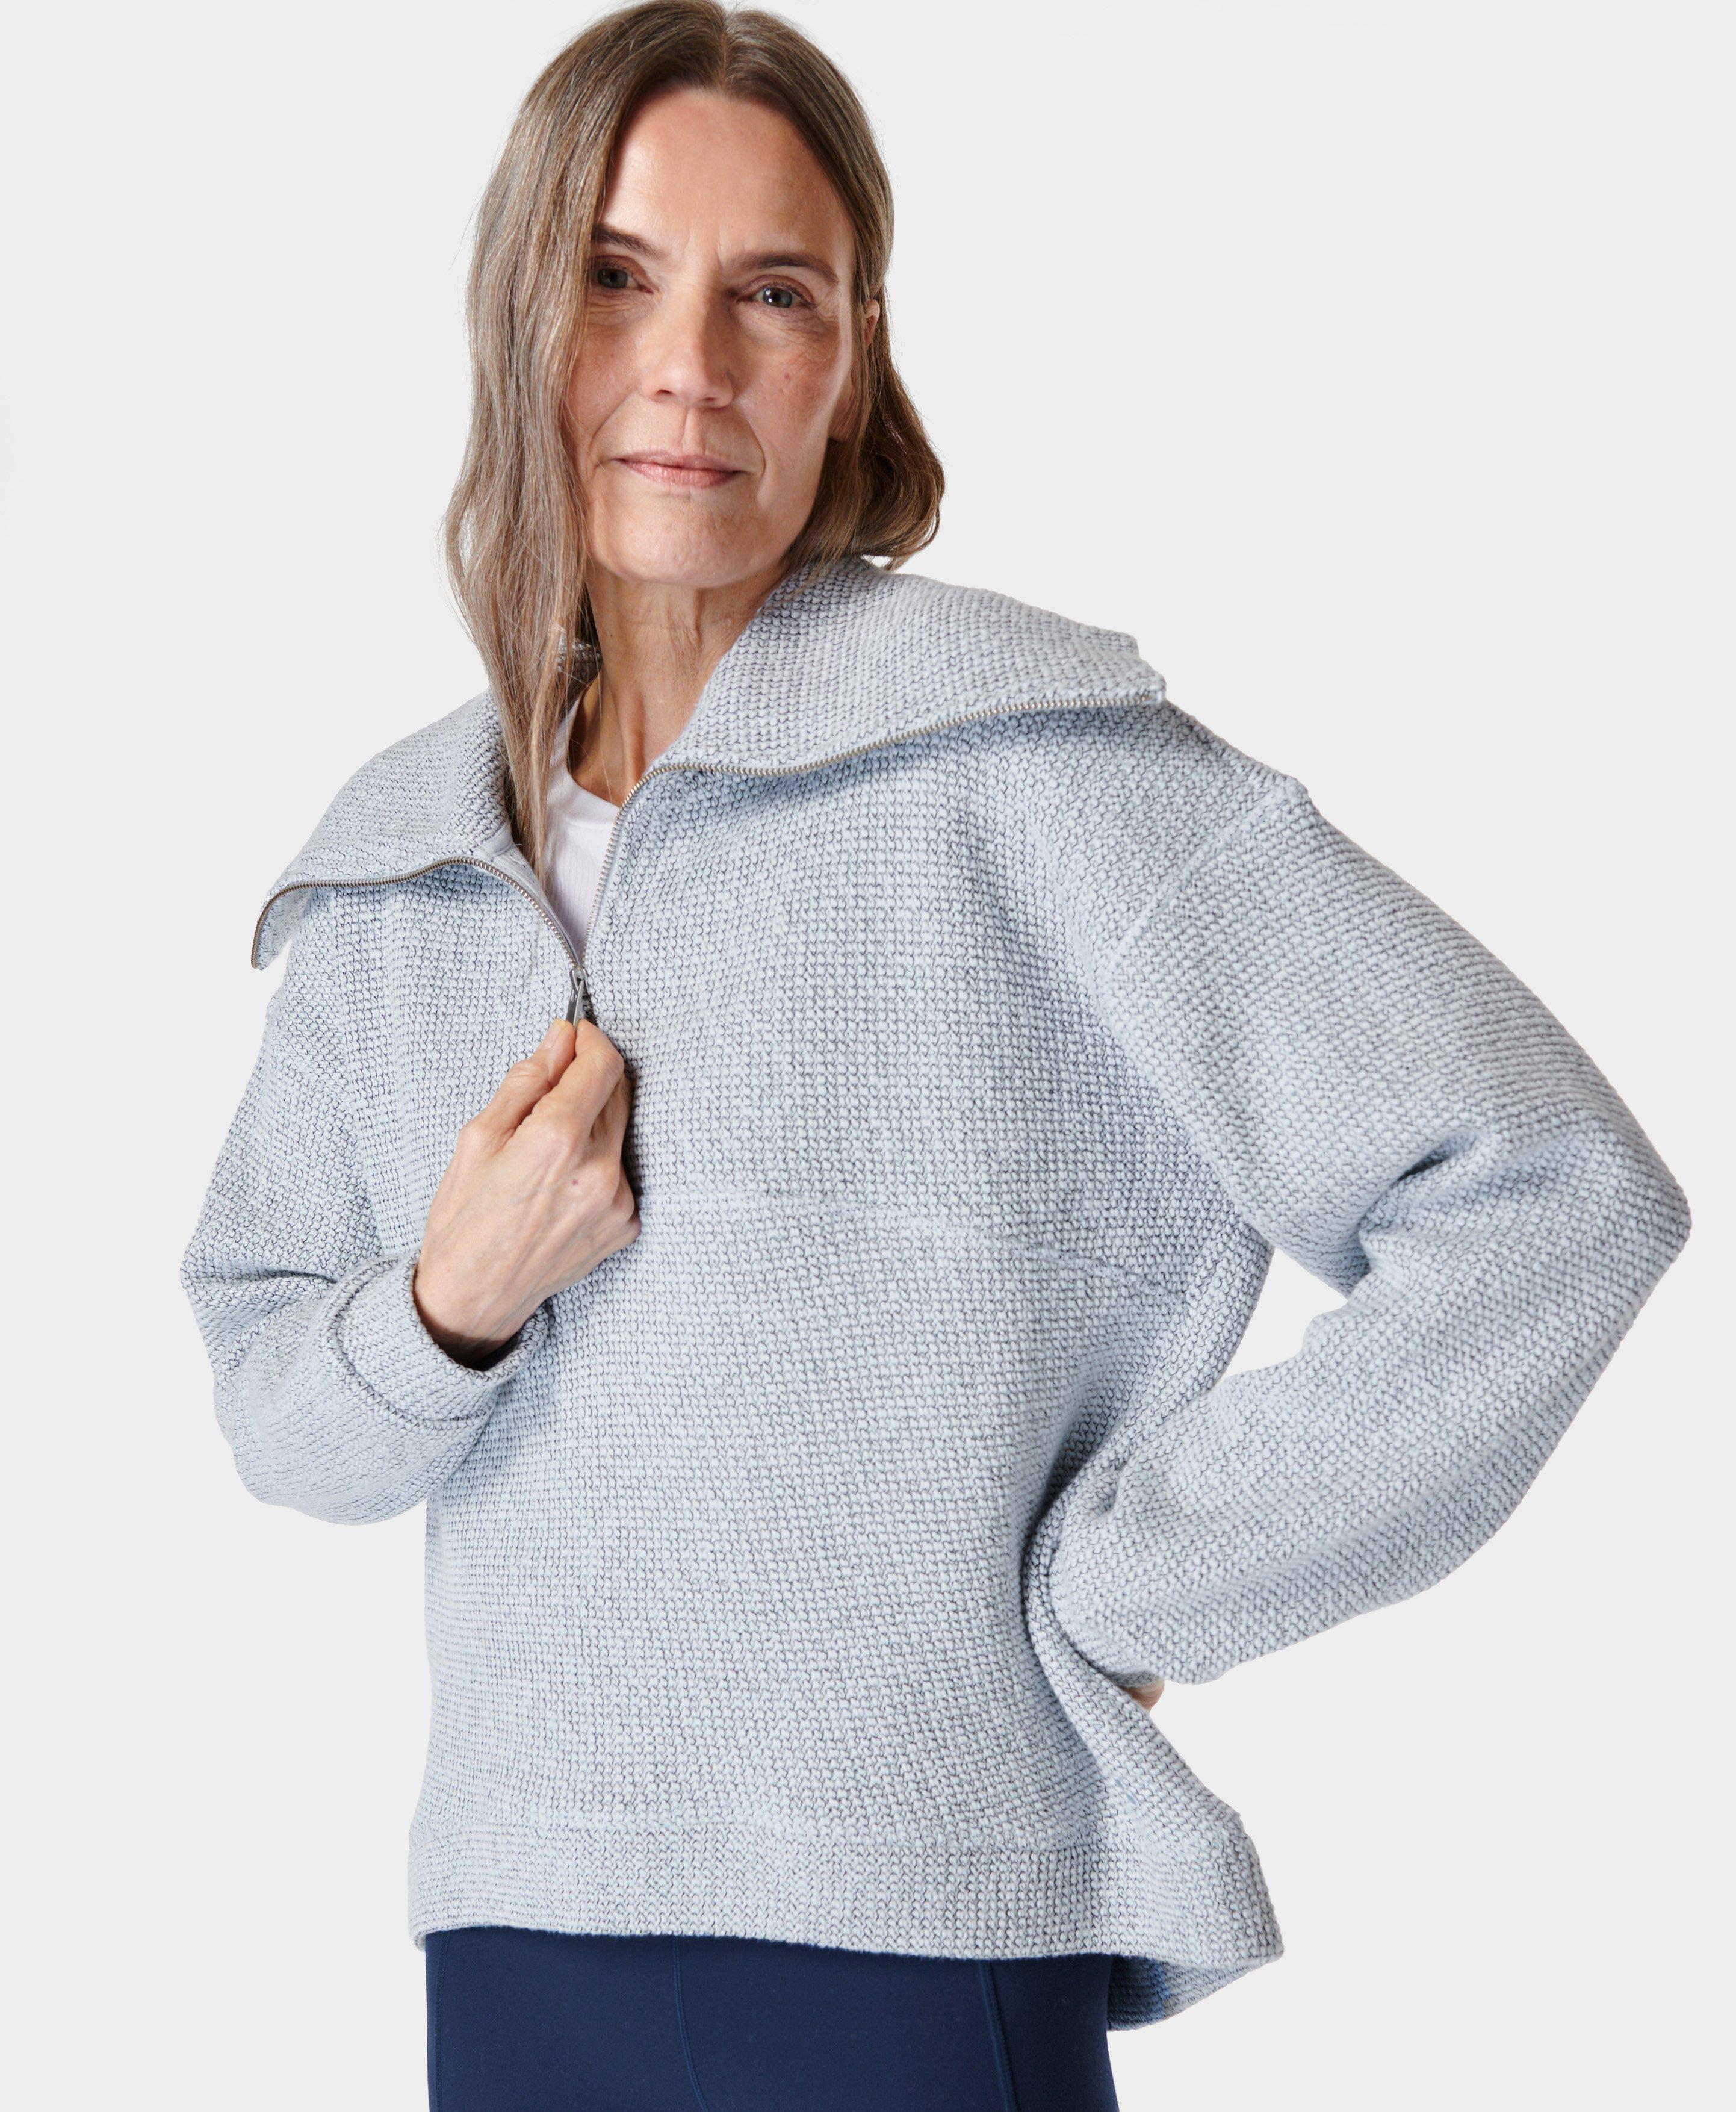 Plush Fleece Textured Half Zip - Studio White, Women's Jumpers + Hoodies